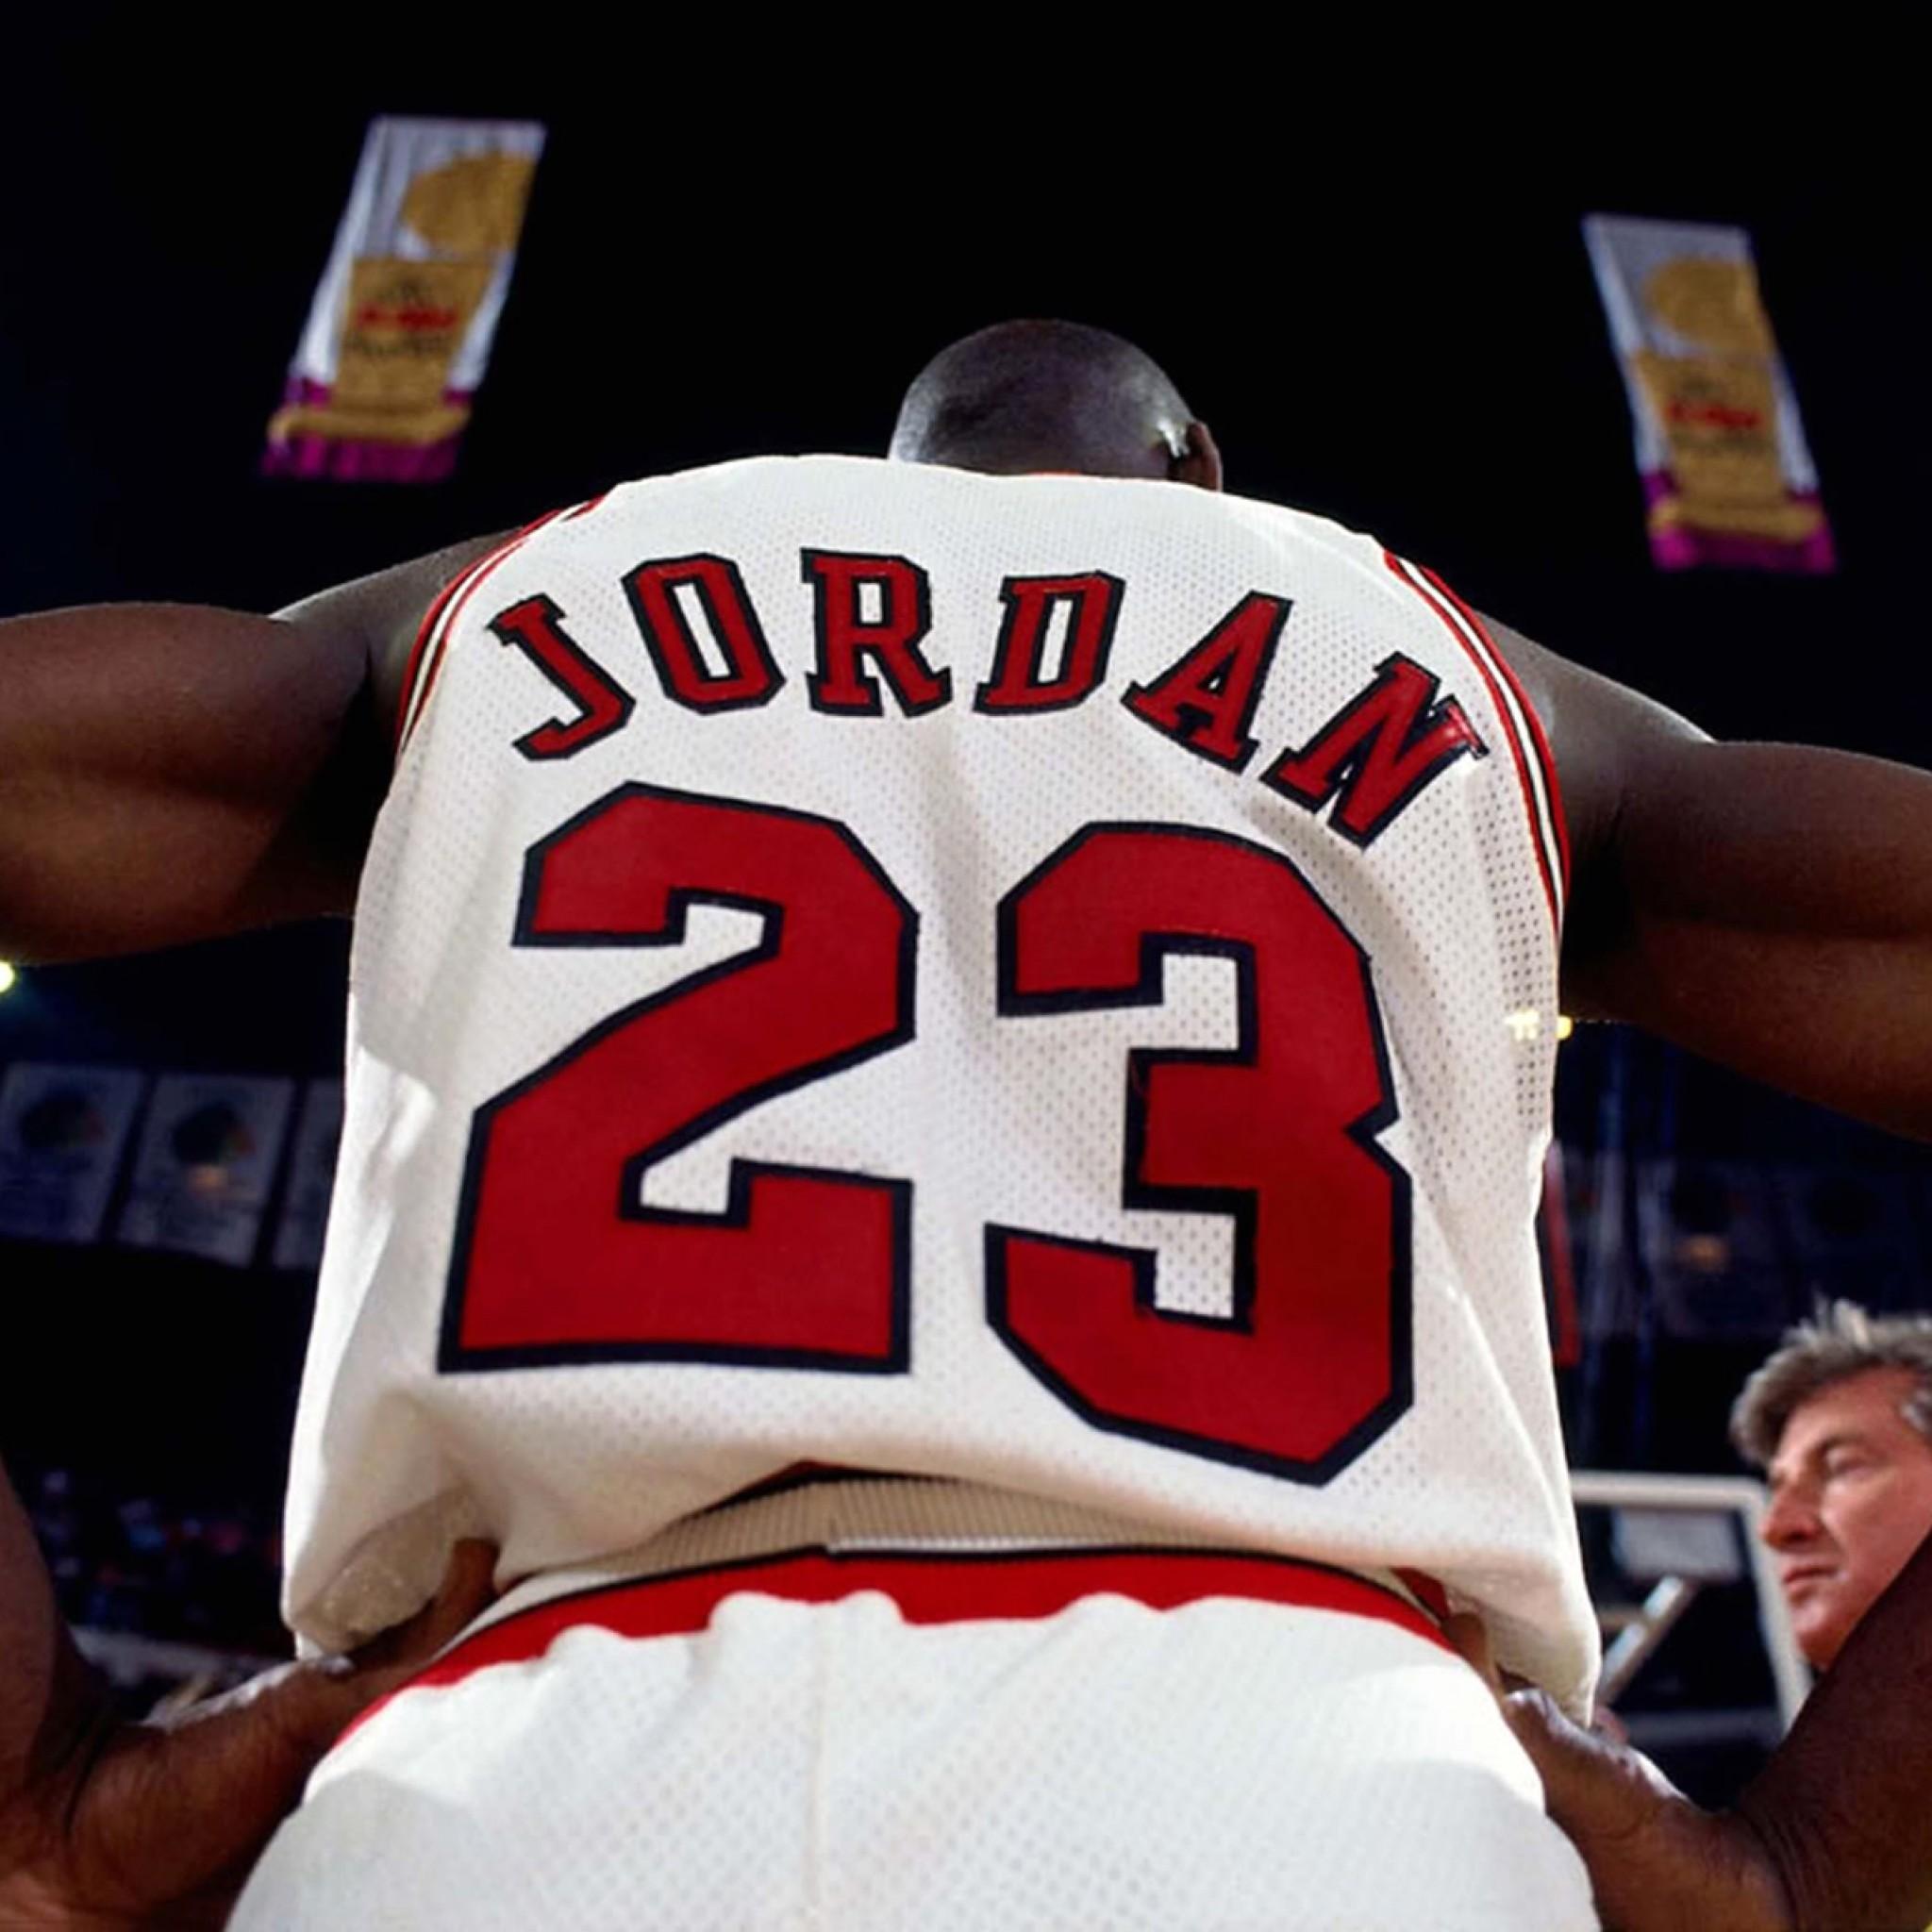 Michael Jordan Chicago Bulls Jersey Wallpaper Id Frenzia.. WERE A JORDEN